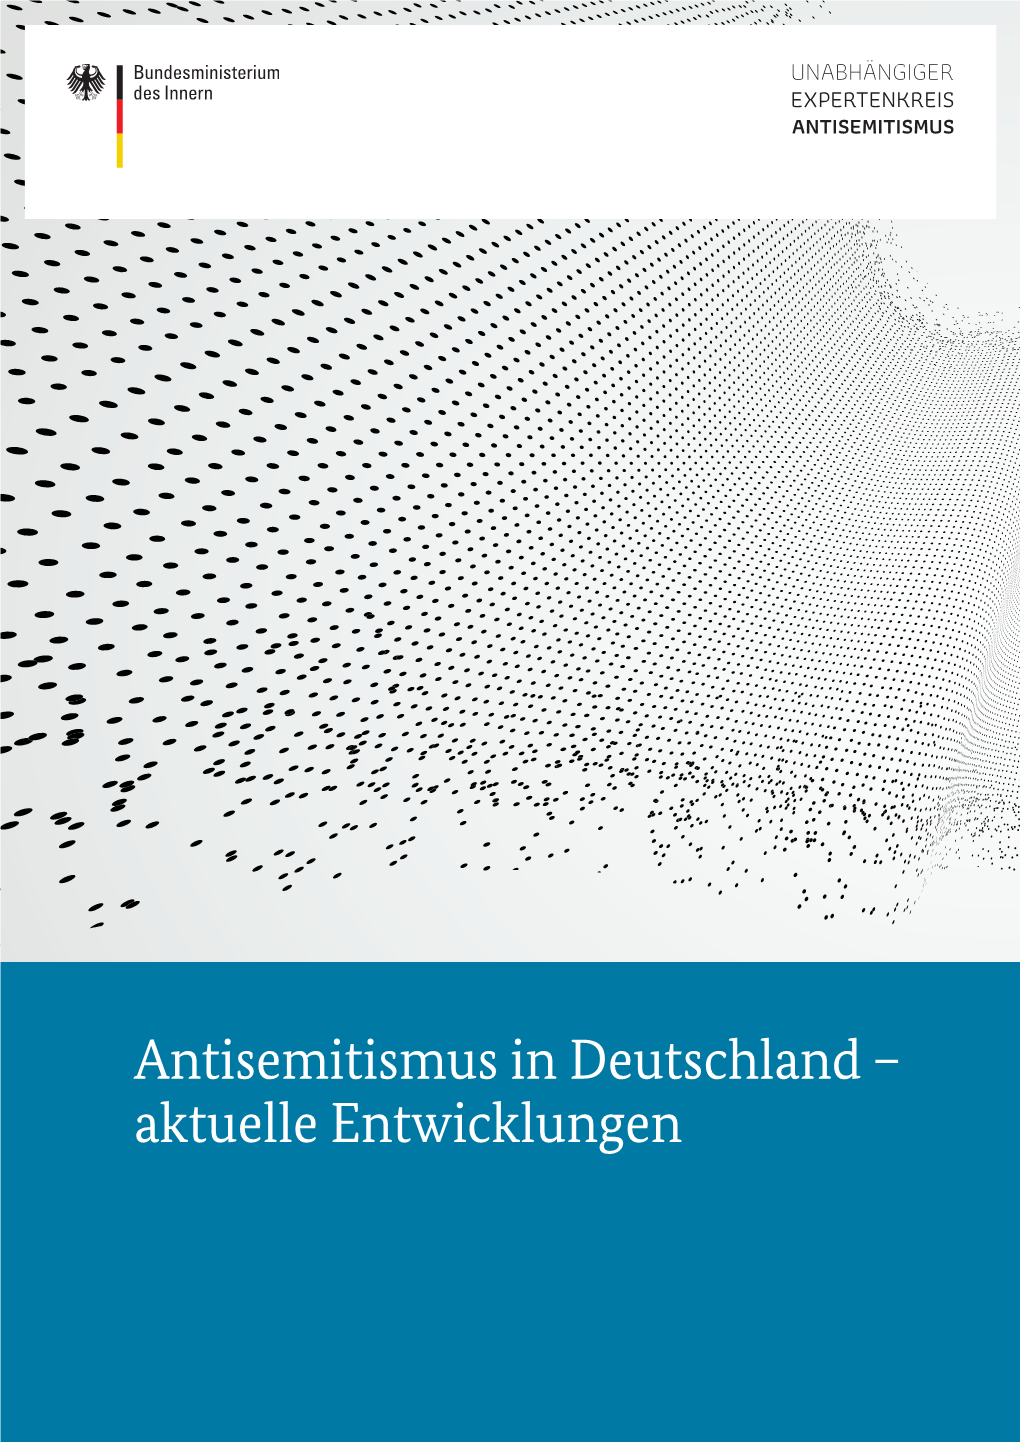 Antisemitismus in Deutschland – Aktuelle Entwicklungen UNABHÄNGIGER EXPERTENKREIS ANTISEMITISMUS